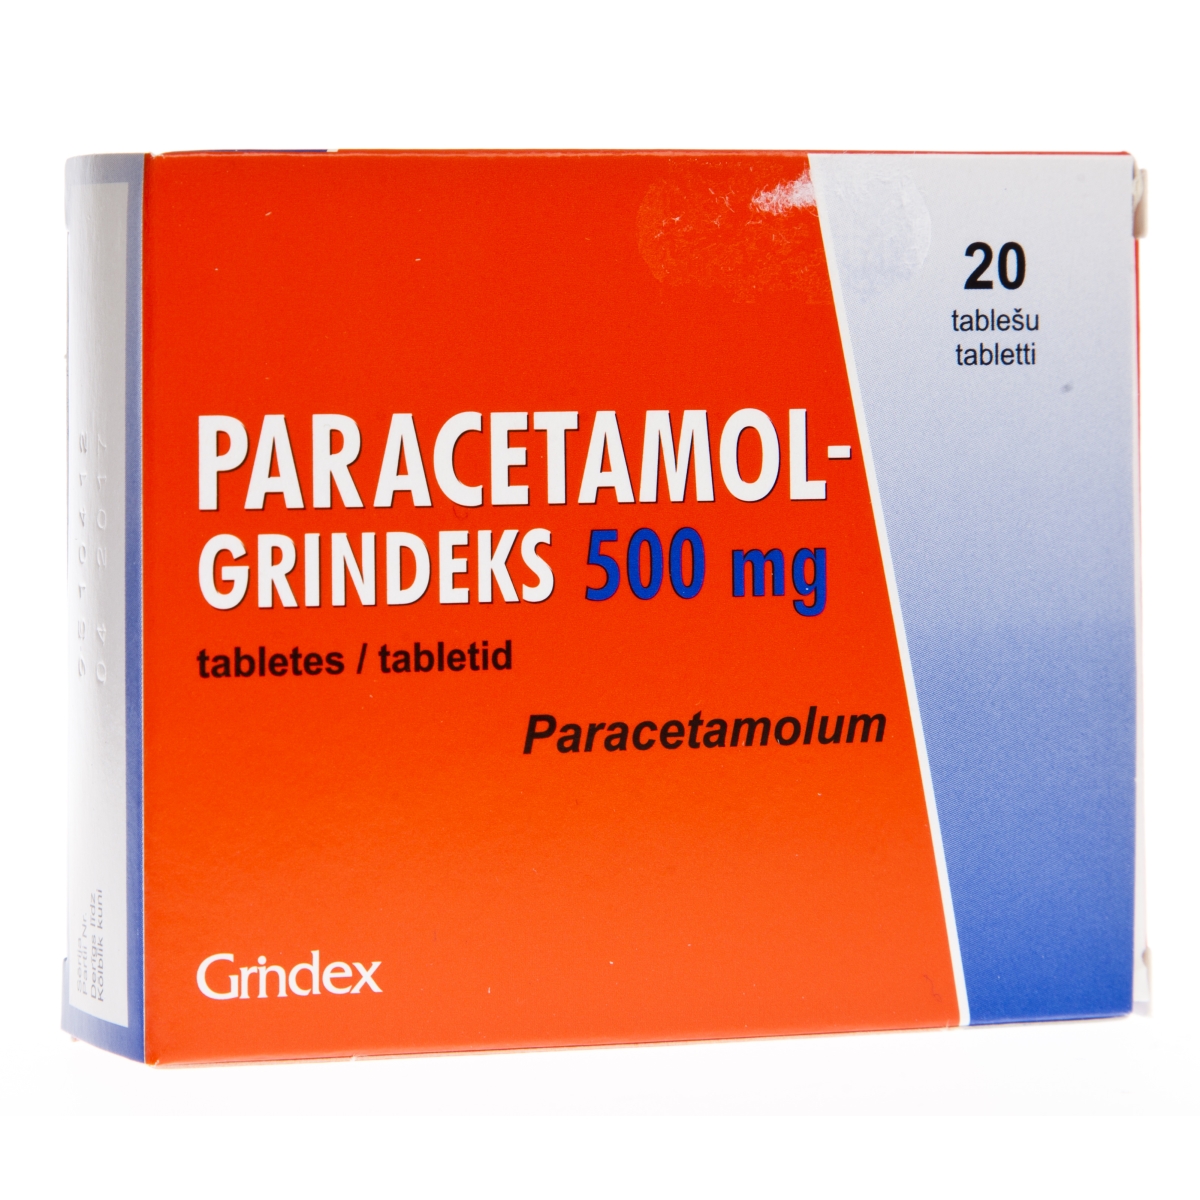 PARACETAMOL-GRINDEKS 500MG TABLETES N20